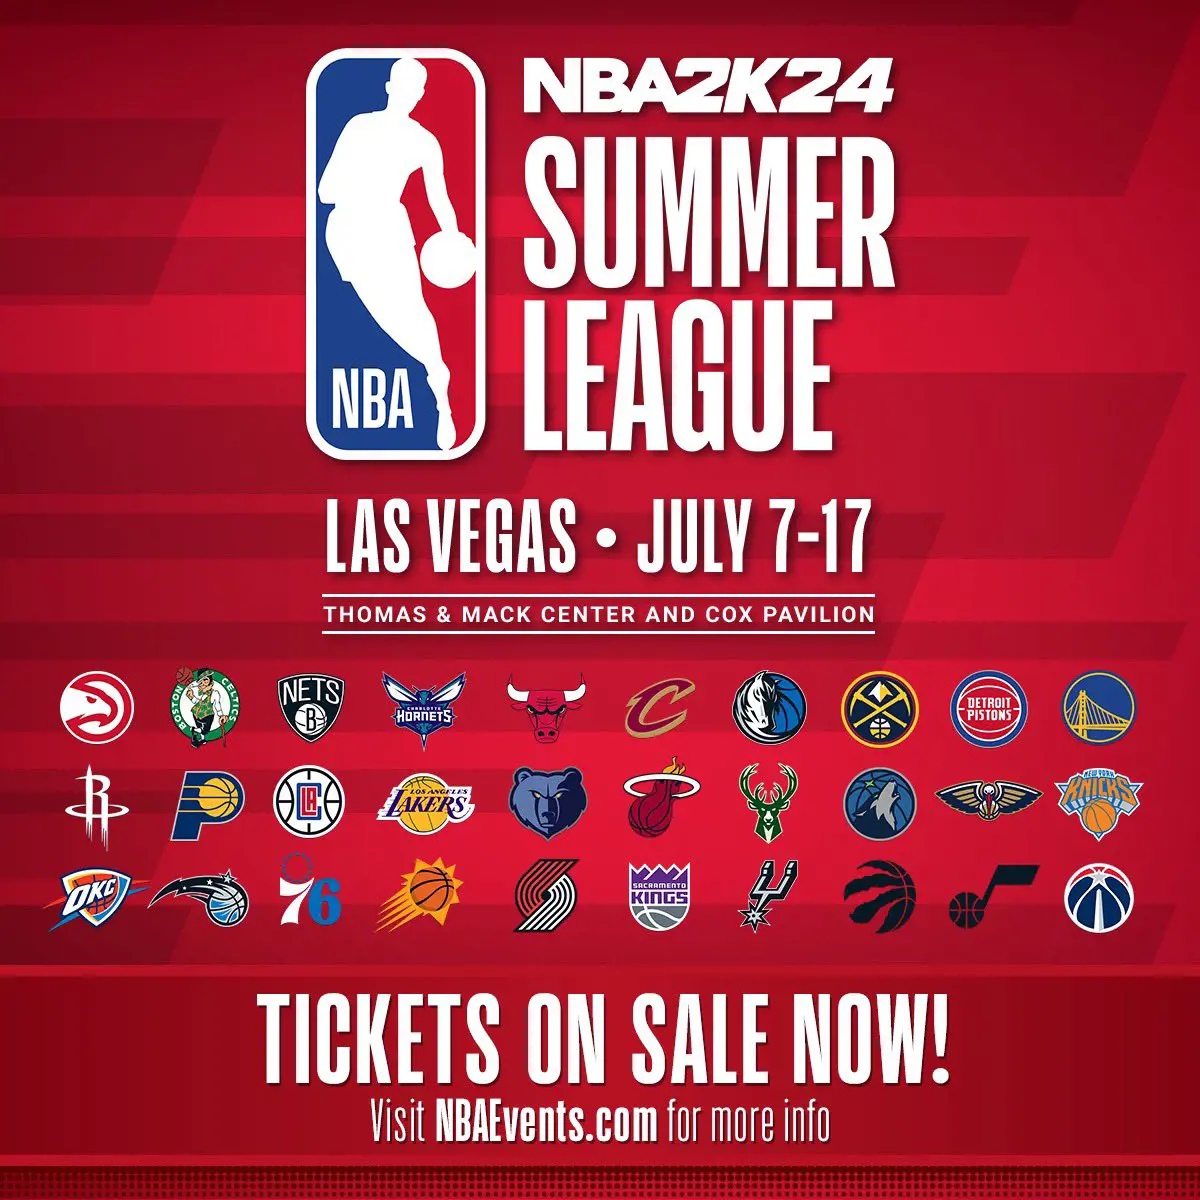 NBA 2K24 Summer League Vegas will feature 30 franchises